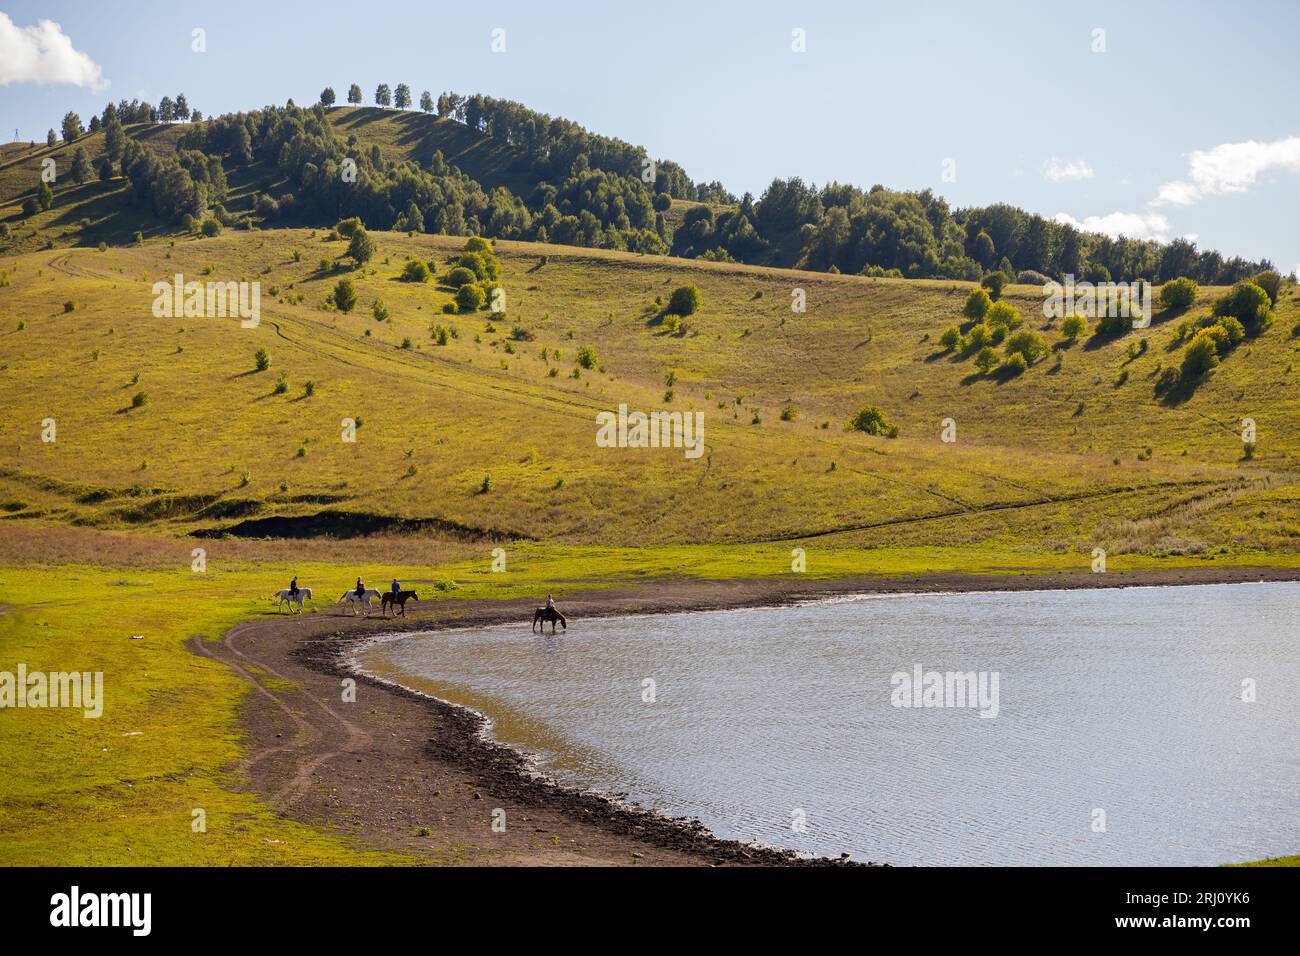 Paesaggio estivo con un lago sulle montagne di Altai in una giornata di sole, valle del fiume Katun. La gente cavalca i cavalli sulla costa Foto Stock